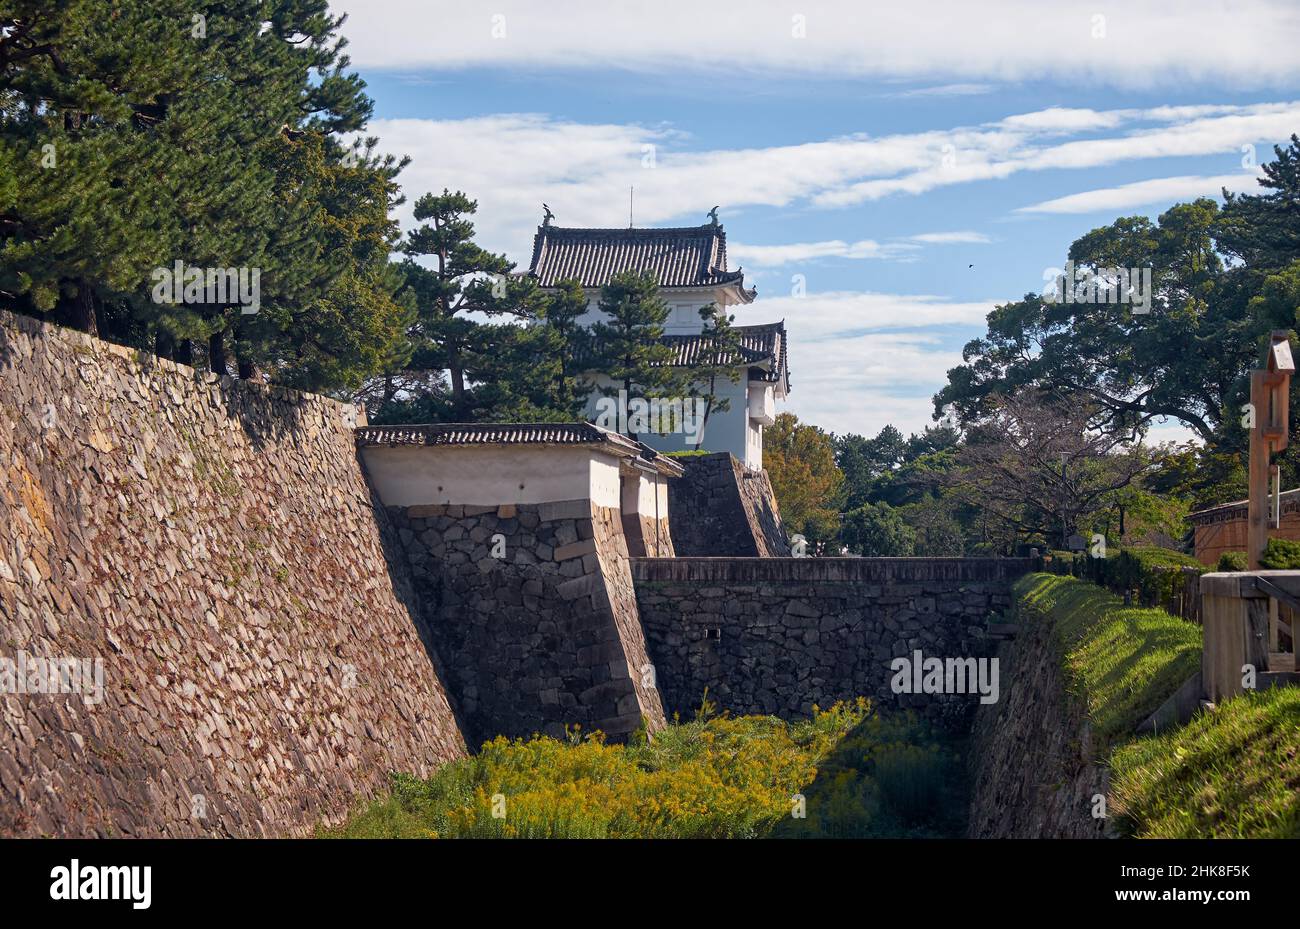 Tounan-sumi Yagura, torre di avvistamento dell'angolo sud-orientale, la torre a tre piani sull'angolo sud-orientale di Honmaru, serviva da punto di osservazione per proteggere il Nag Foto Stock